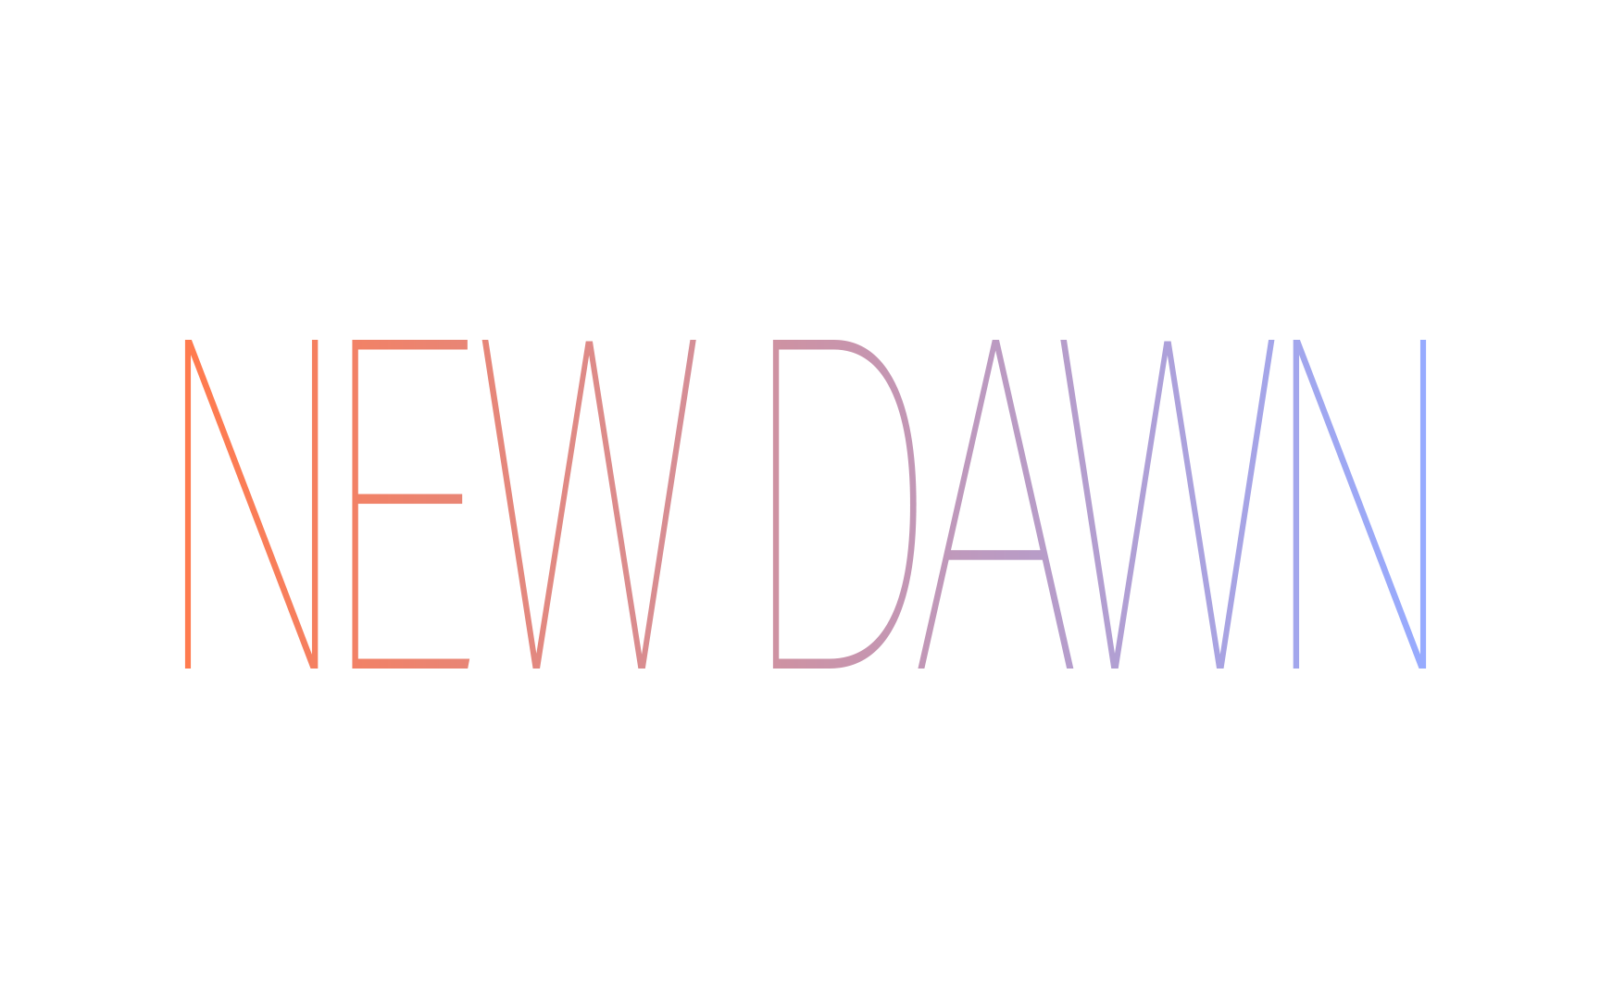 New year, New Dawn! 